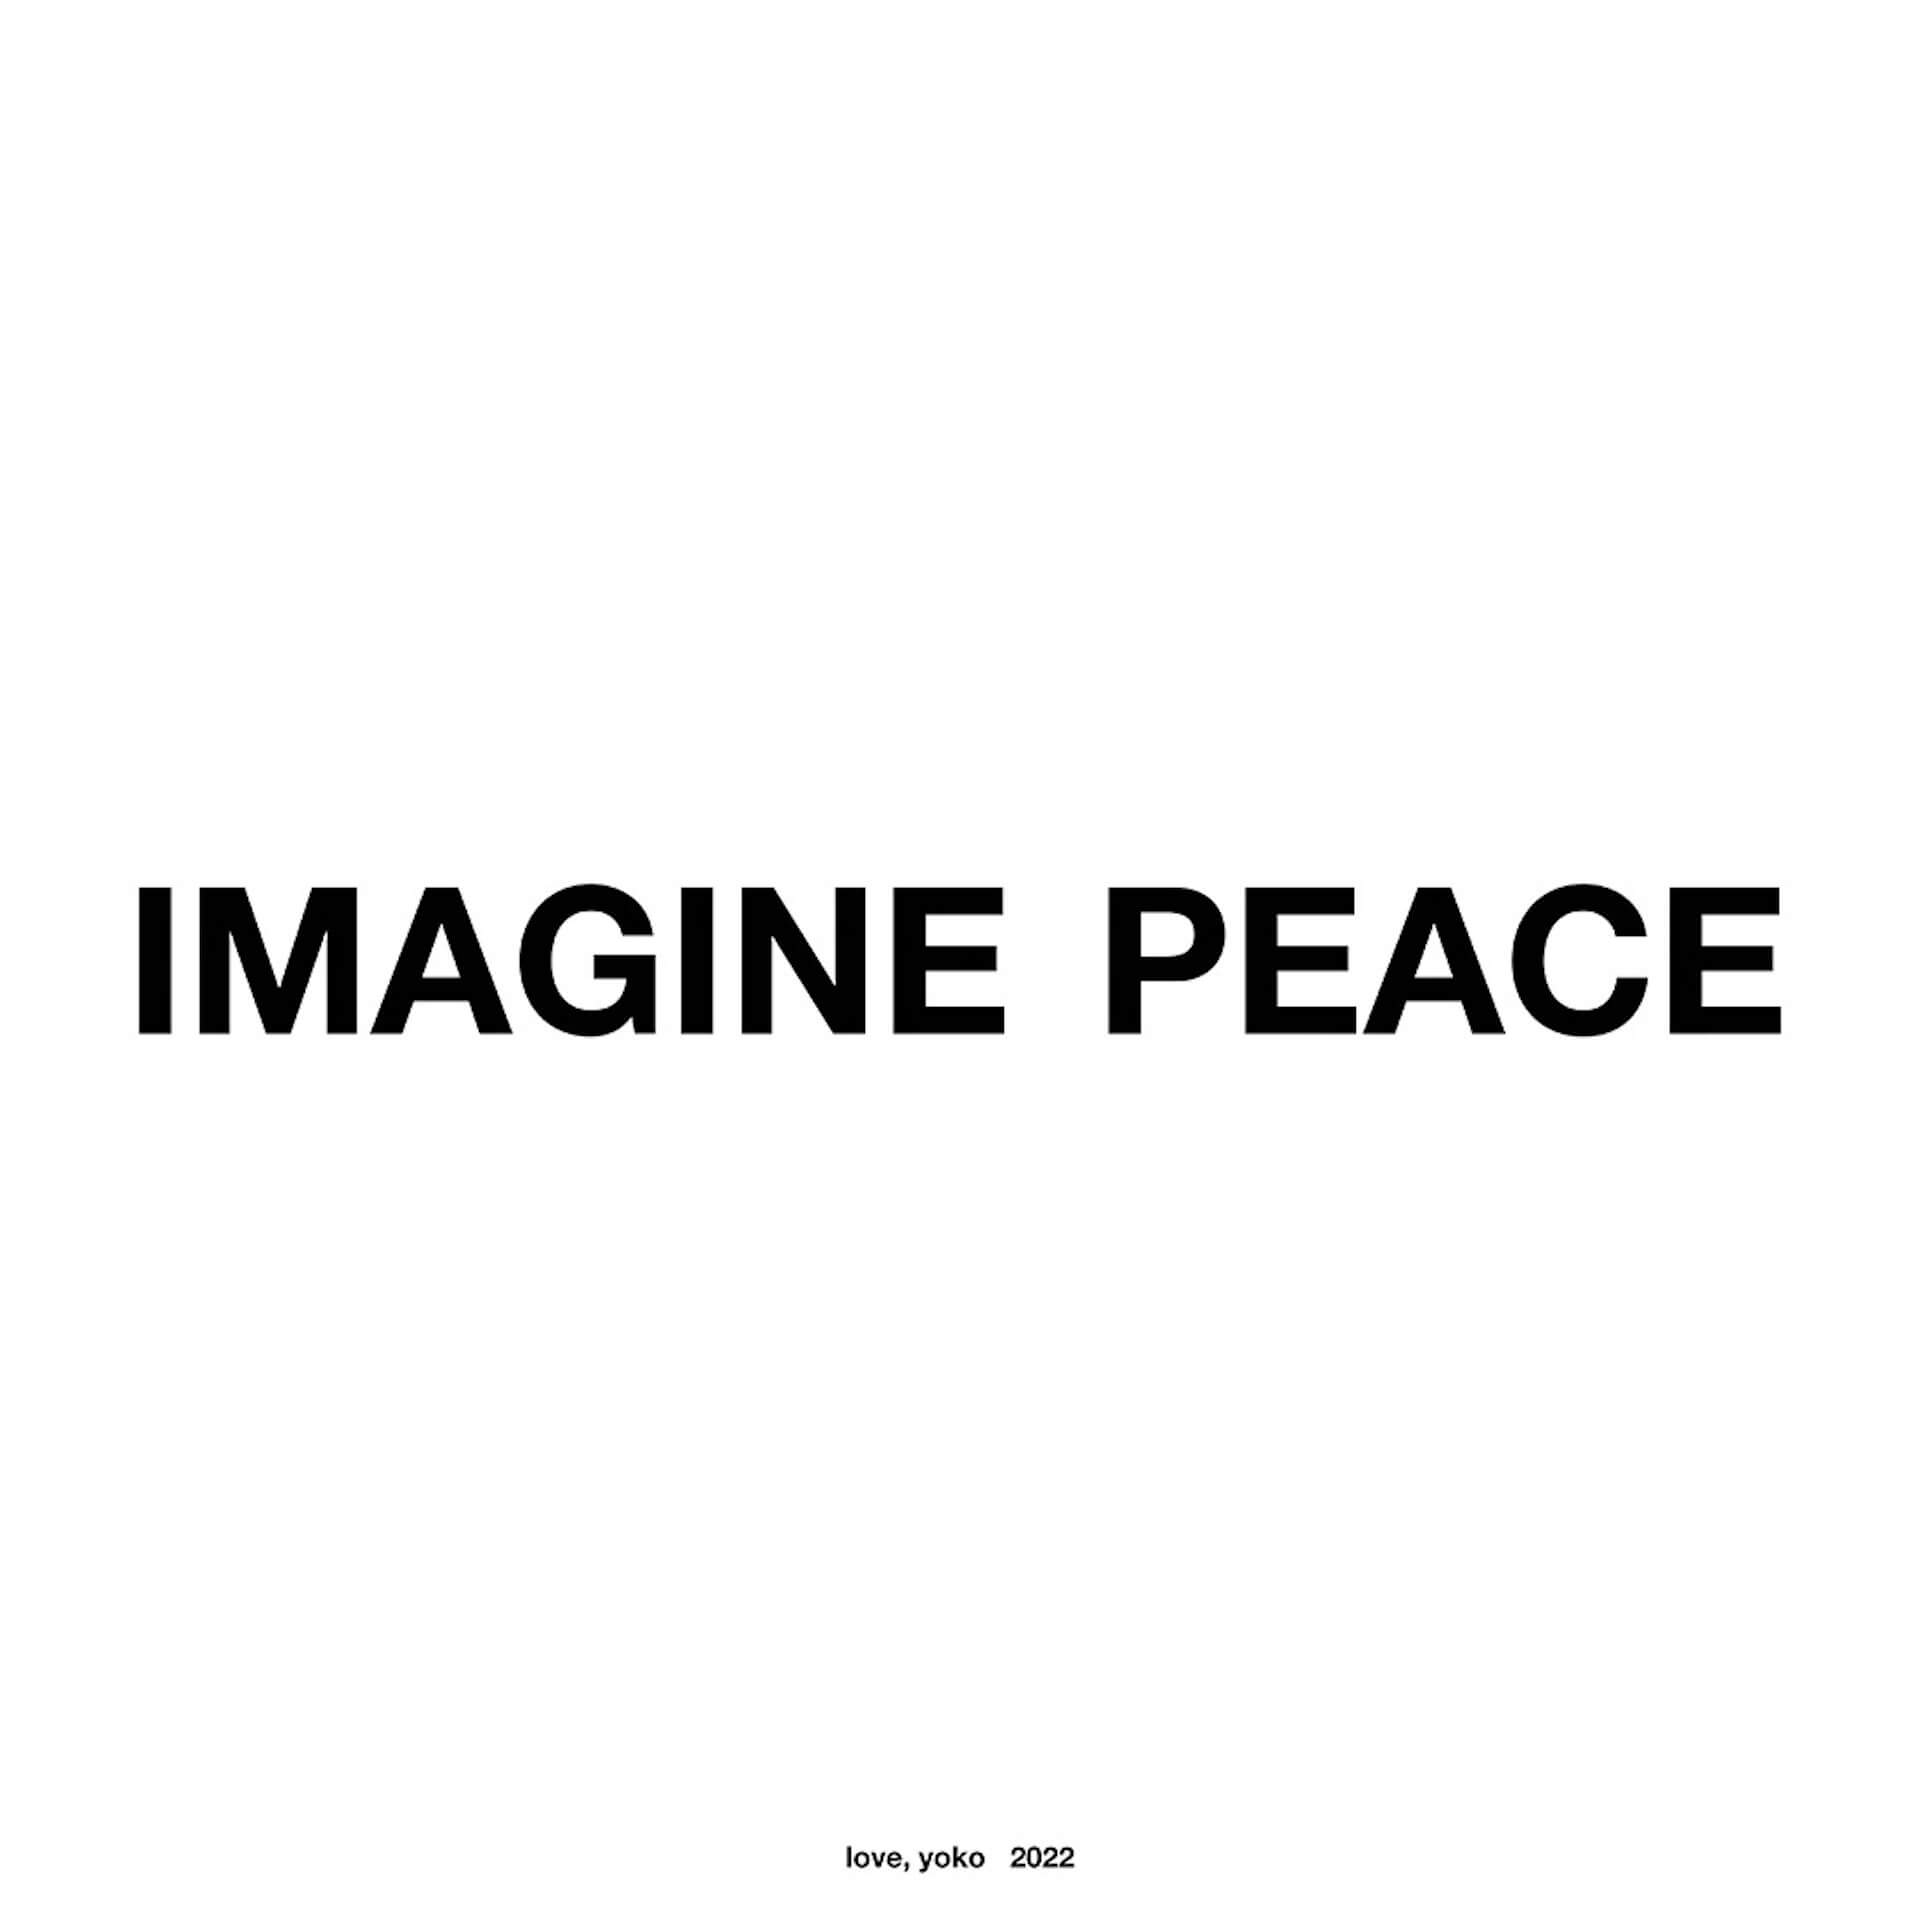 ヨーコ・オノが平和を願う「IMAGINE PEACE」キャンペーンを世界各地で実施｜シルクスクリーン・プリントをチャリティ制作 art220315_yoko-ono-imagine-peace-01